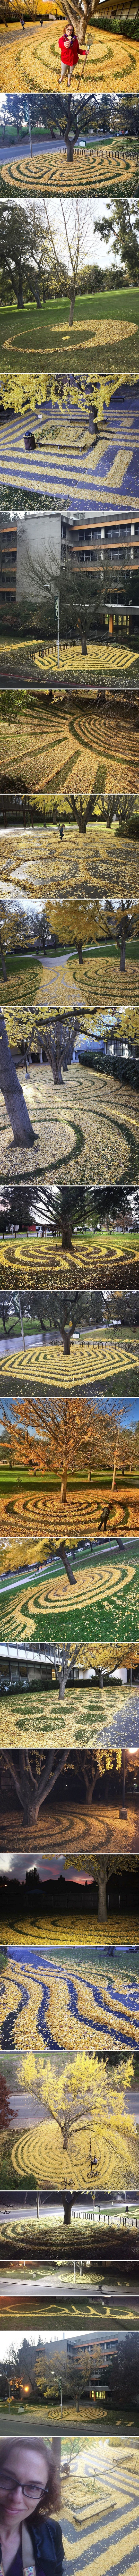 Zaposlenica sveučilišta svake godine oduševljava studente svojim čarobni igrama s otpalim lišćem